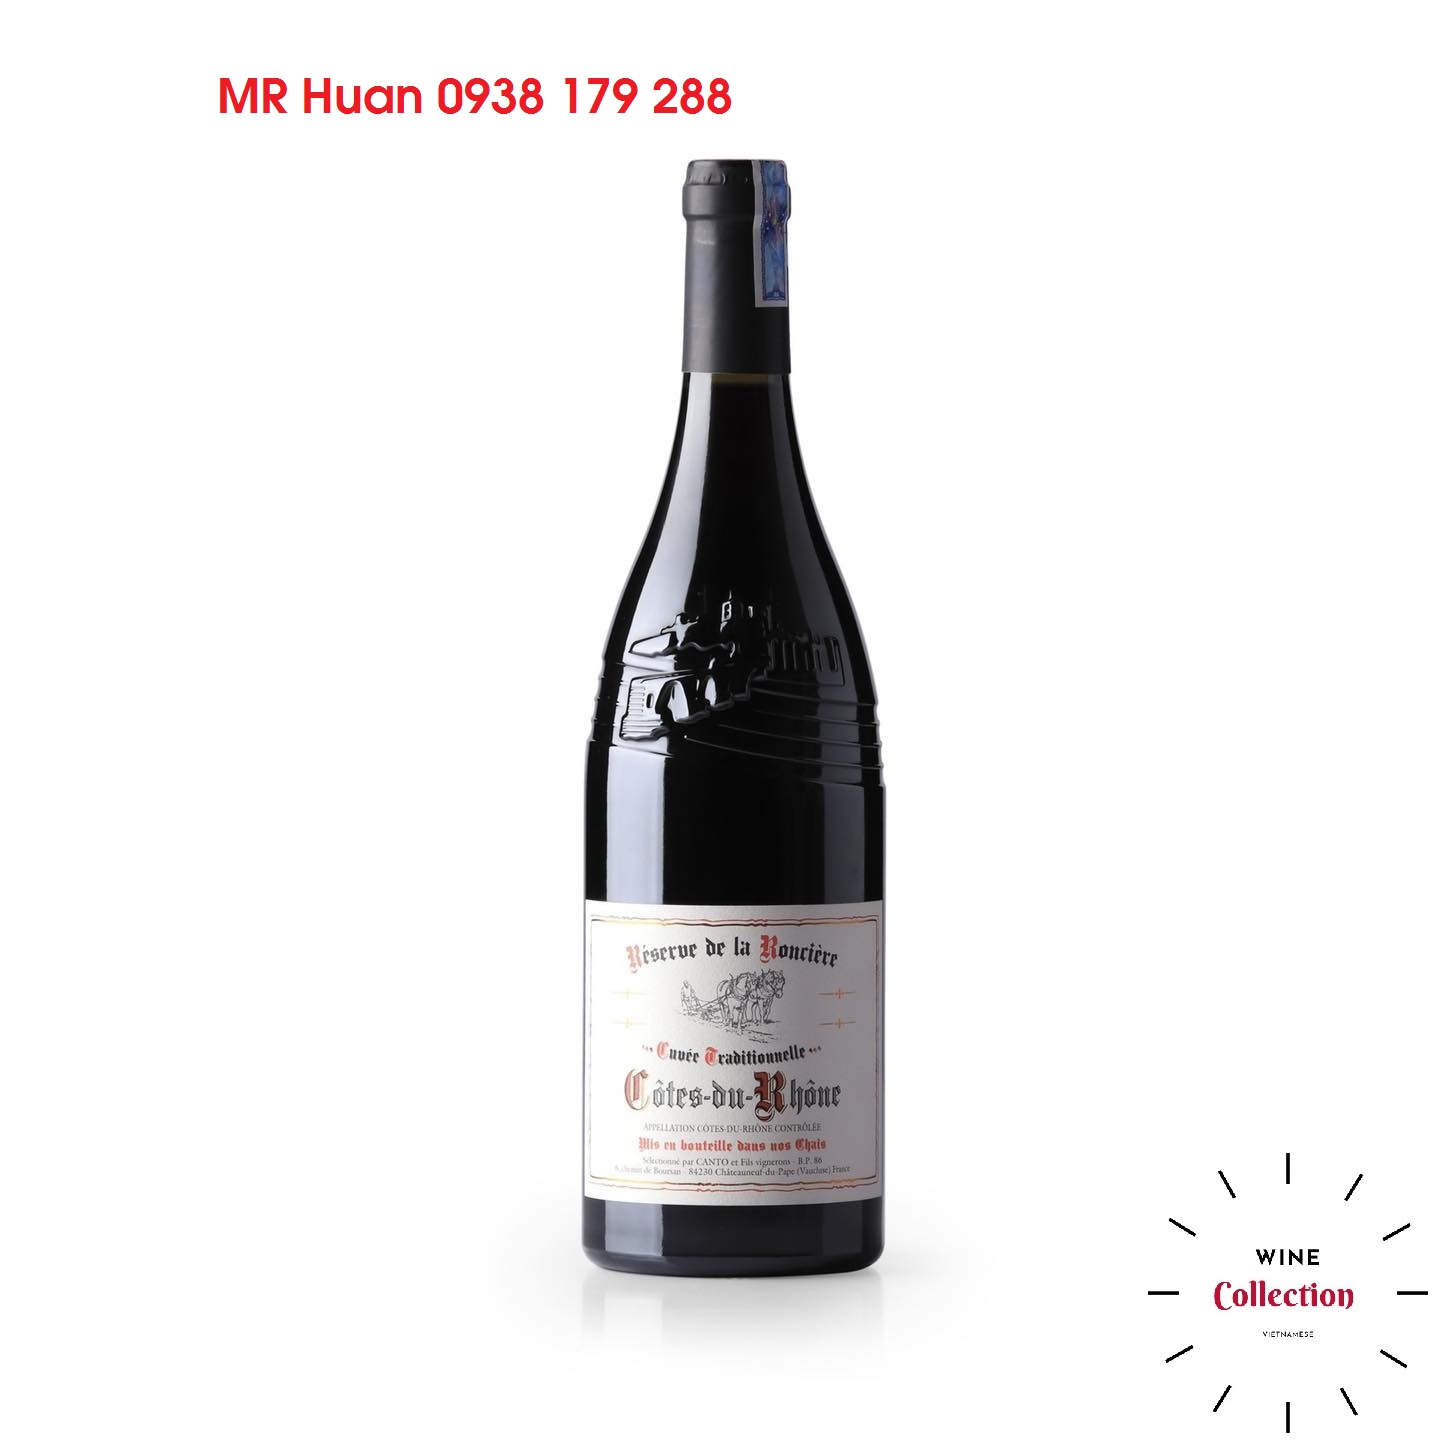 Rượu vang Cotes-du-Rhone-2018 Reserve de La Ronciere.